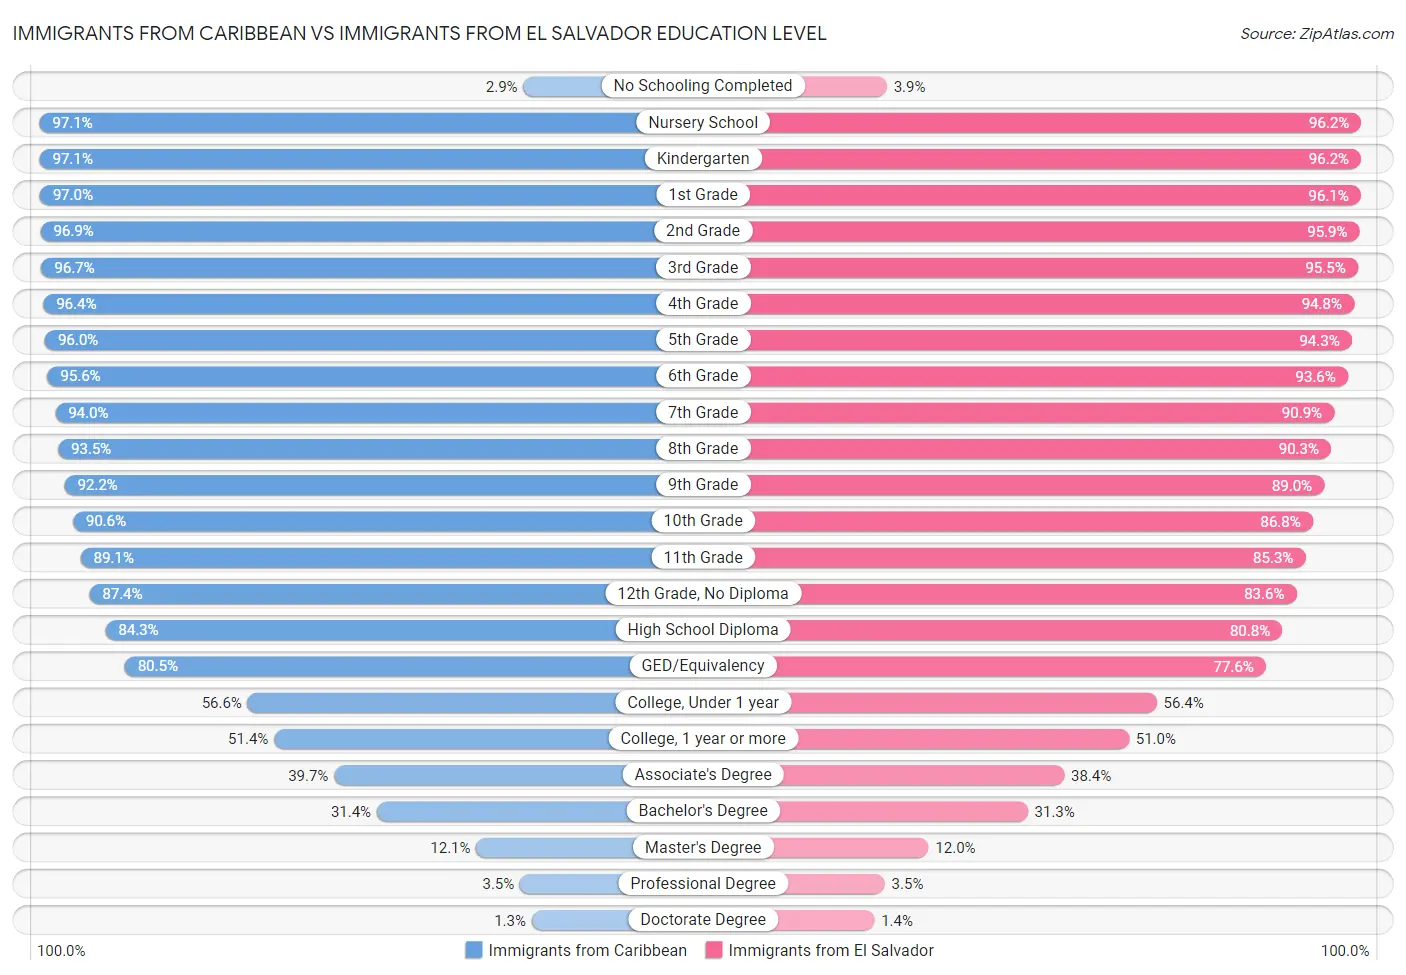 Immigrants from Caribbean vs Immigrants from El Salvador Education Level